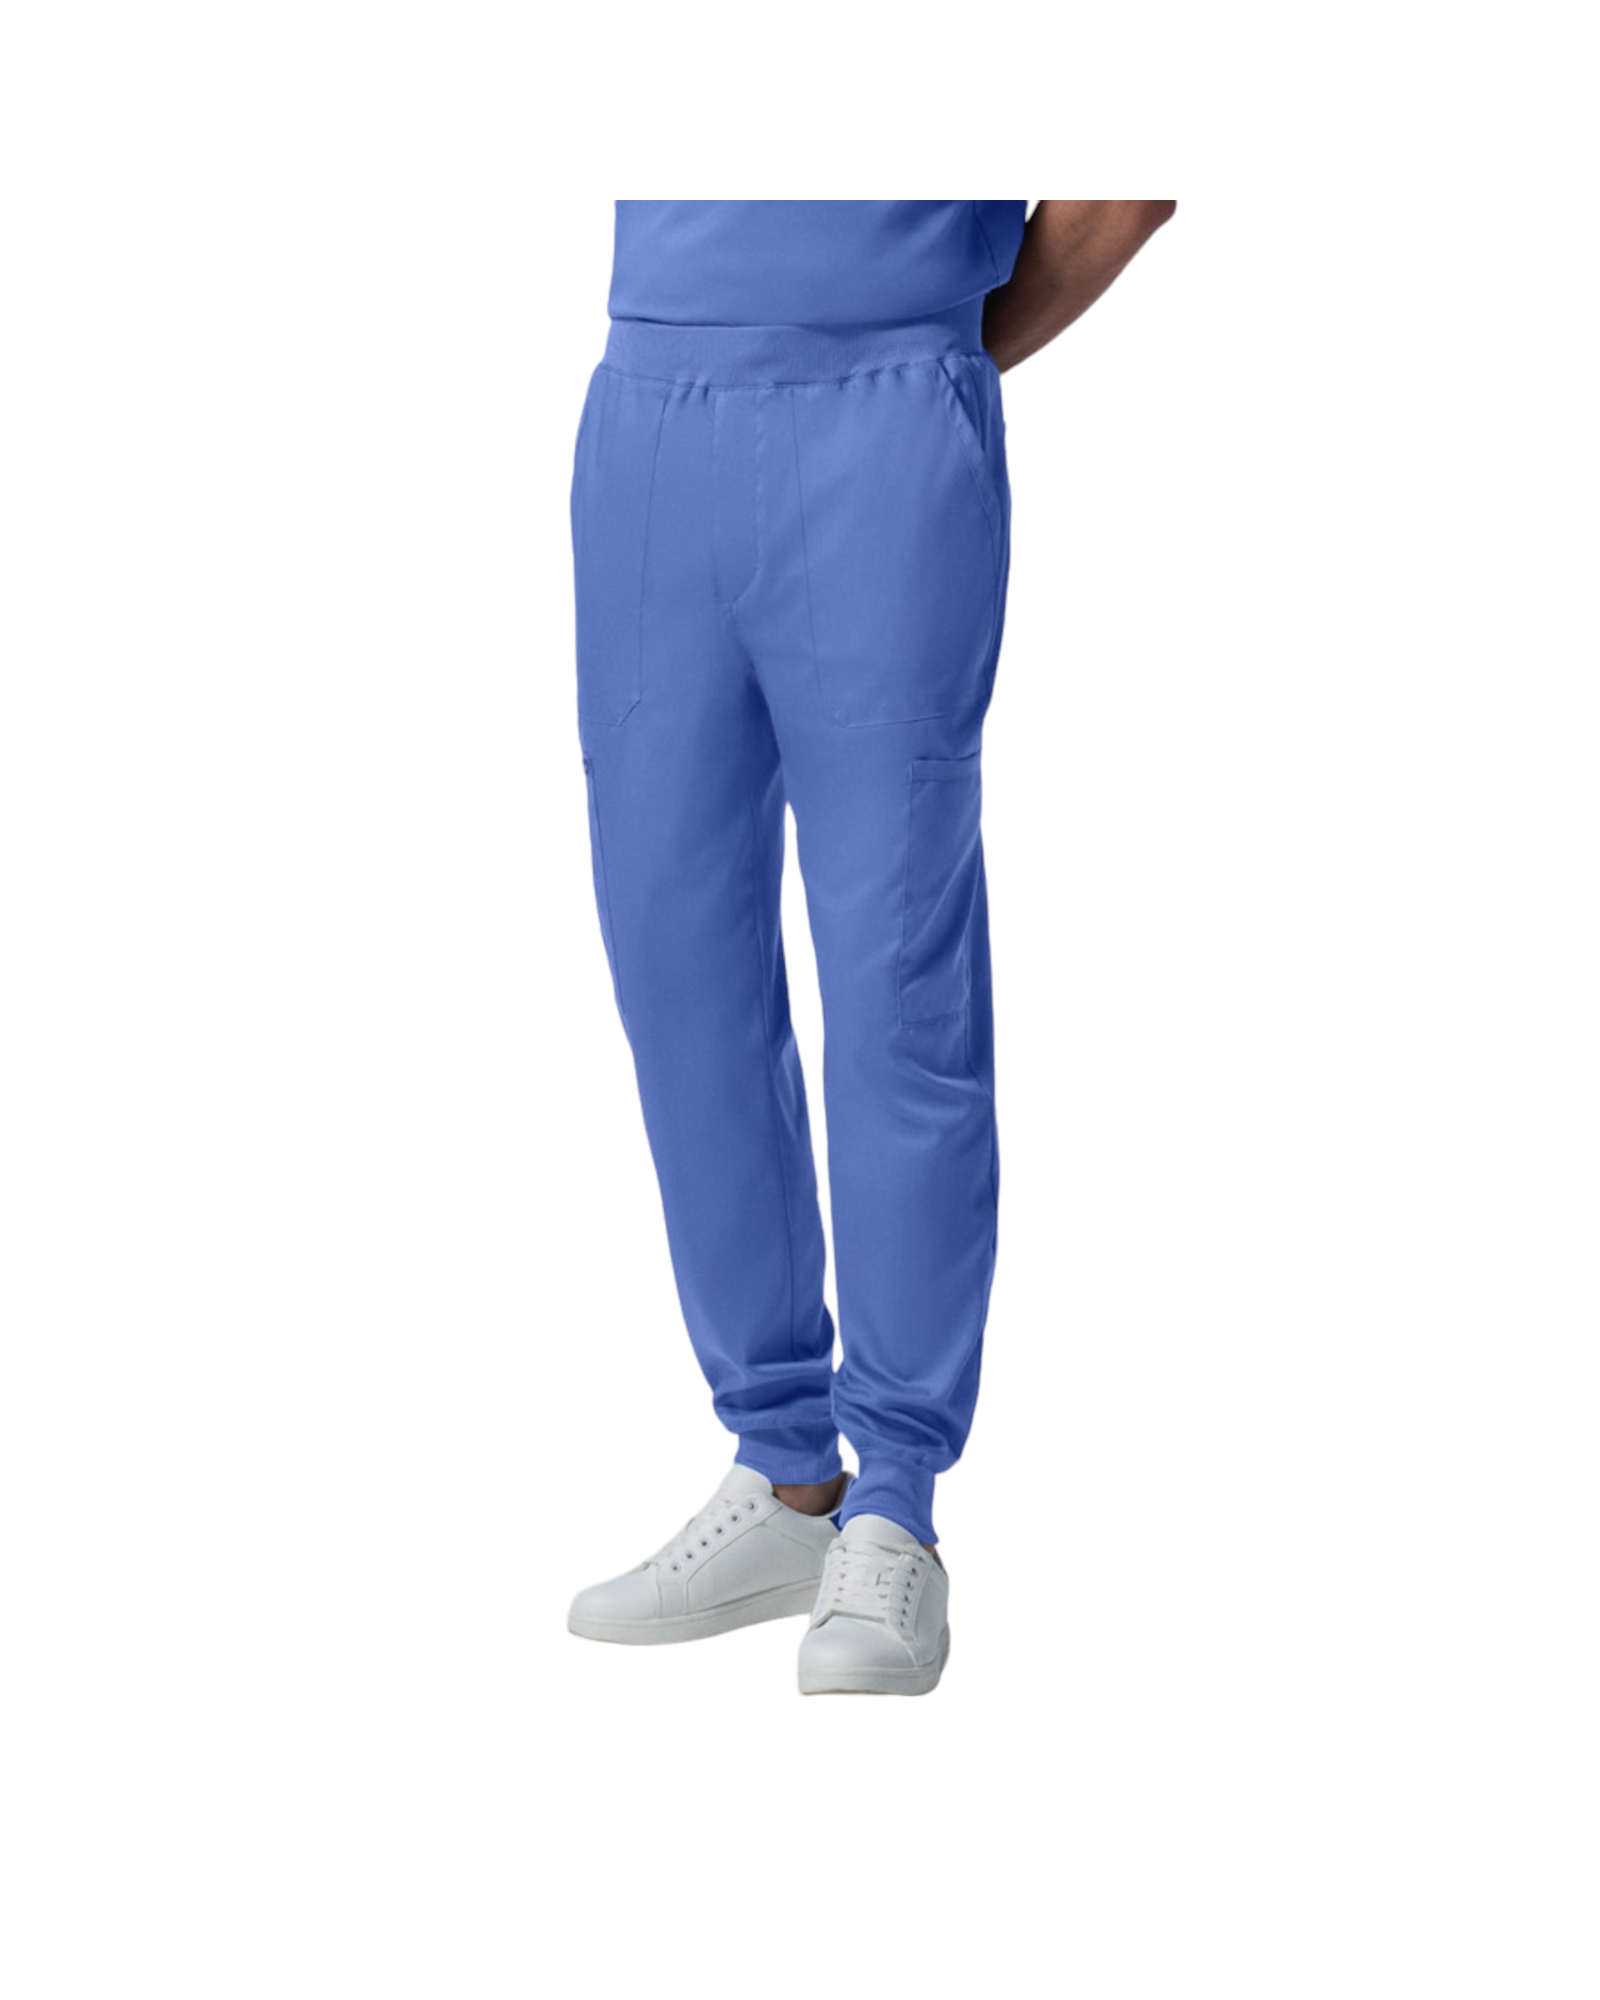 Pantalon jogger pour hommes Landau Proflex #LB407 OS couleur Bleu ciel